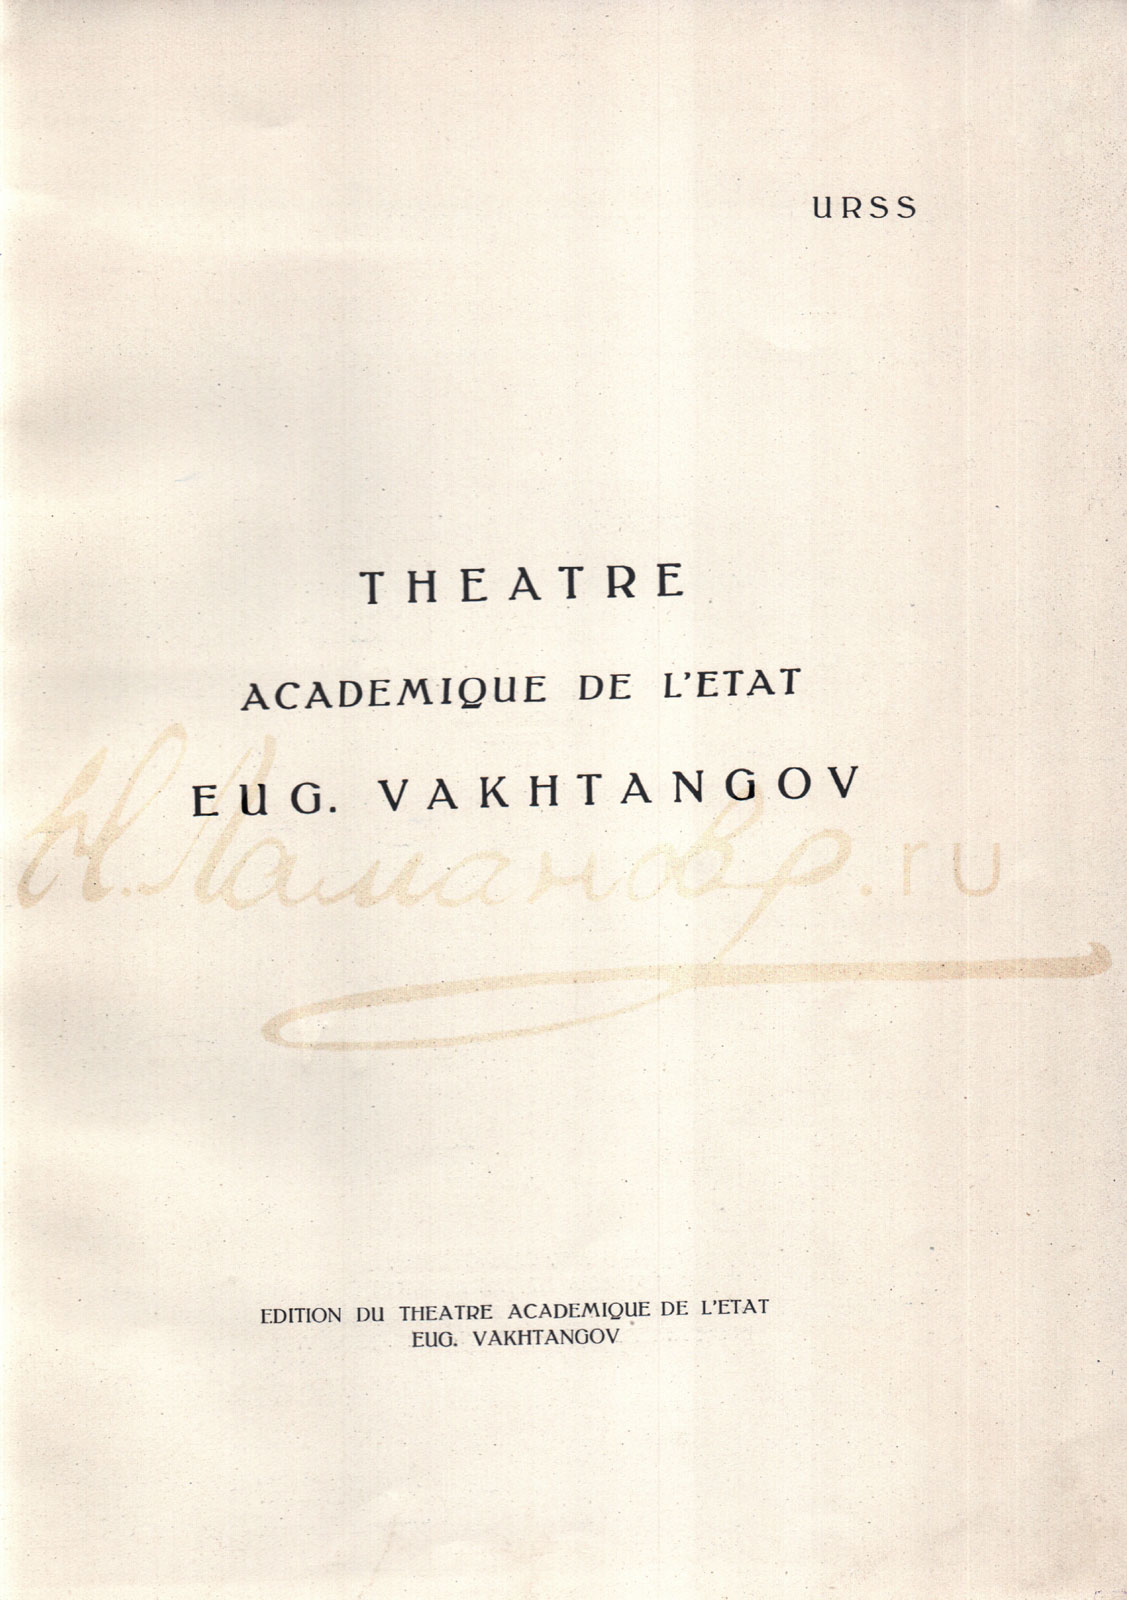 Франкоязычное издание Театра им. Евгения Вахтангова к гастролям в Париже в 1928 году